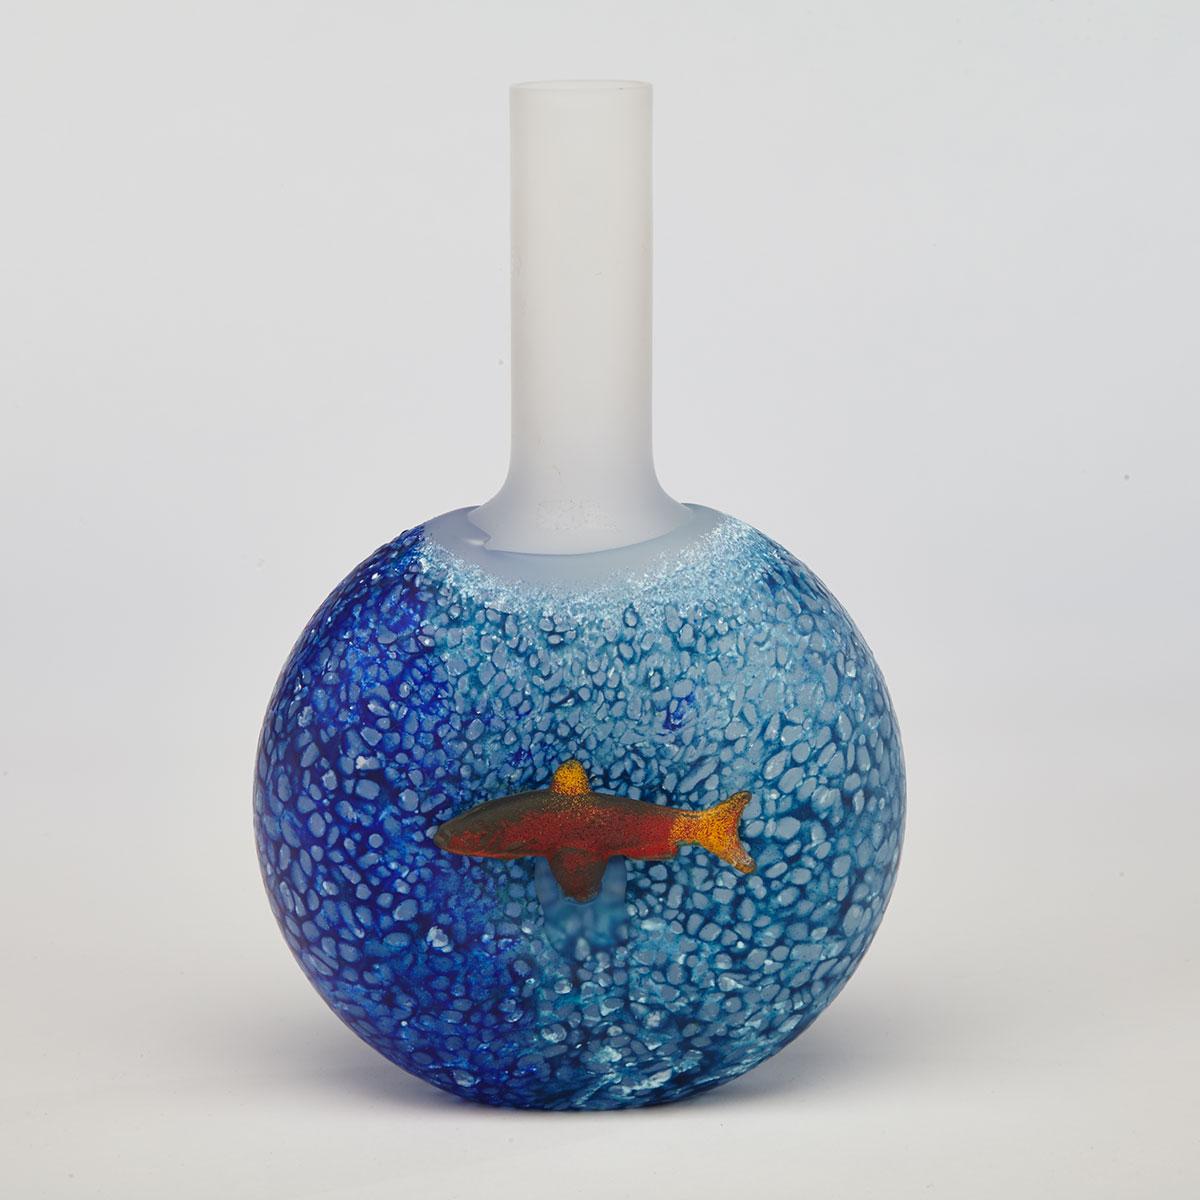 Kjell Engman (Swedish, b.1946) for Kosta Boda, ‘Reef’ Glass Bottle Vase, c.2000